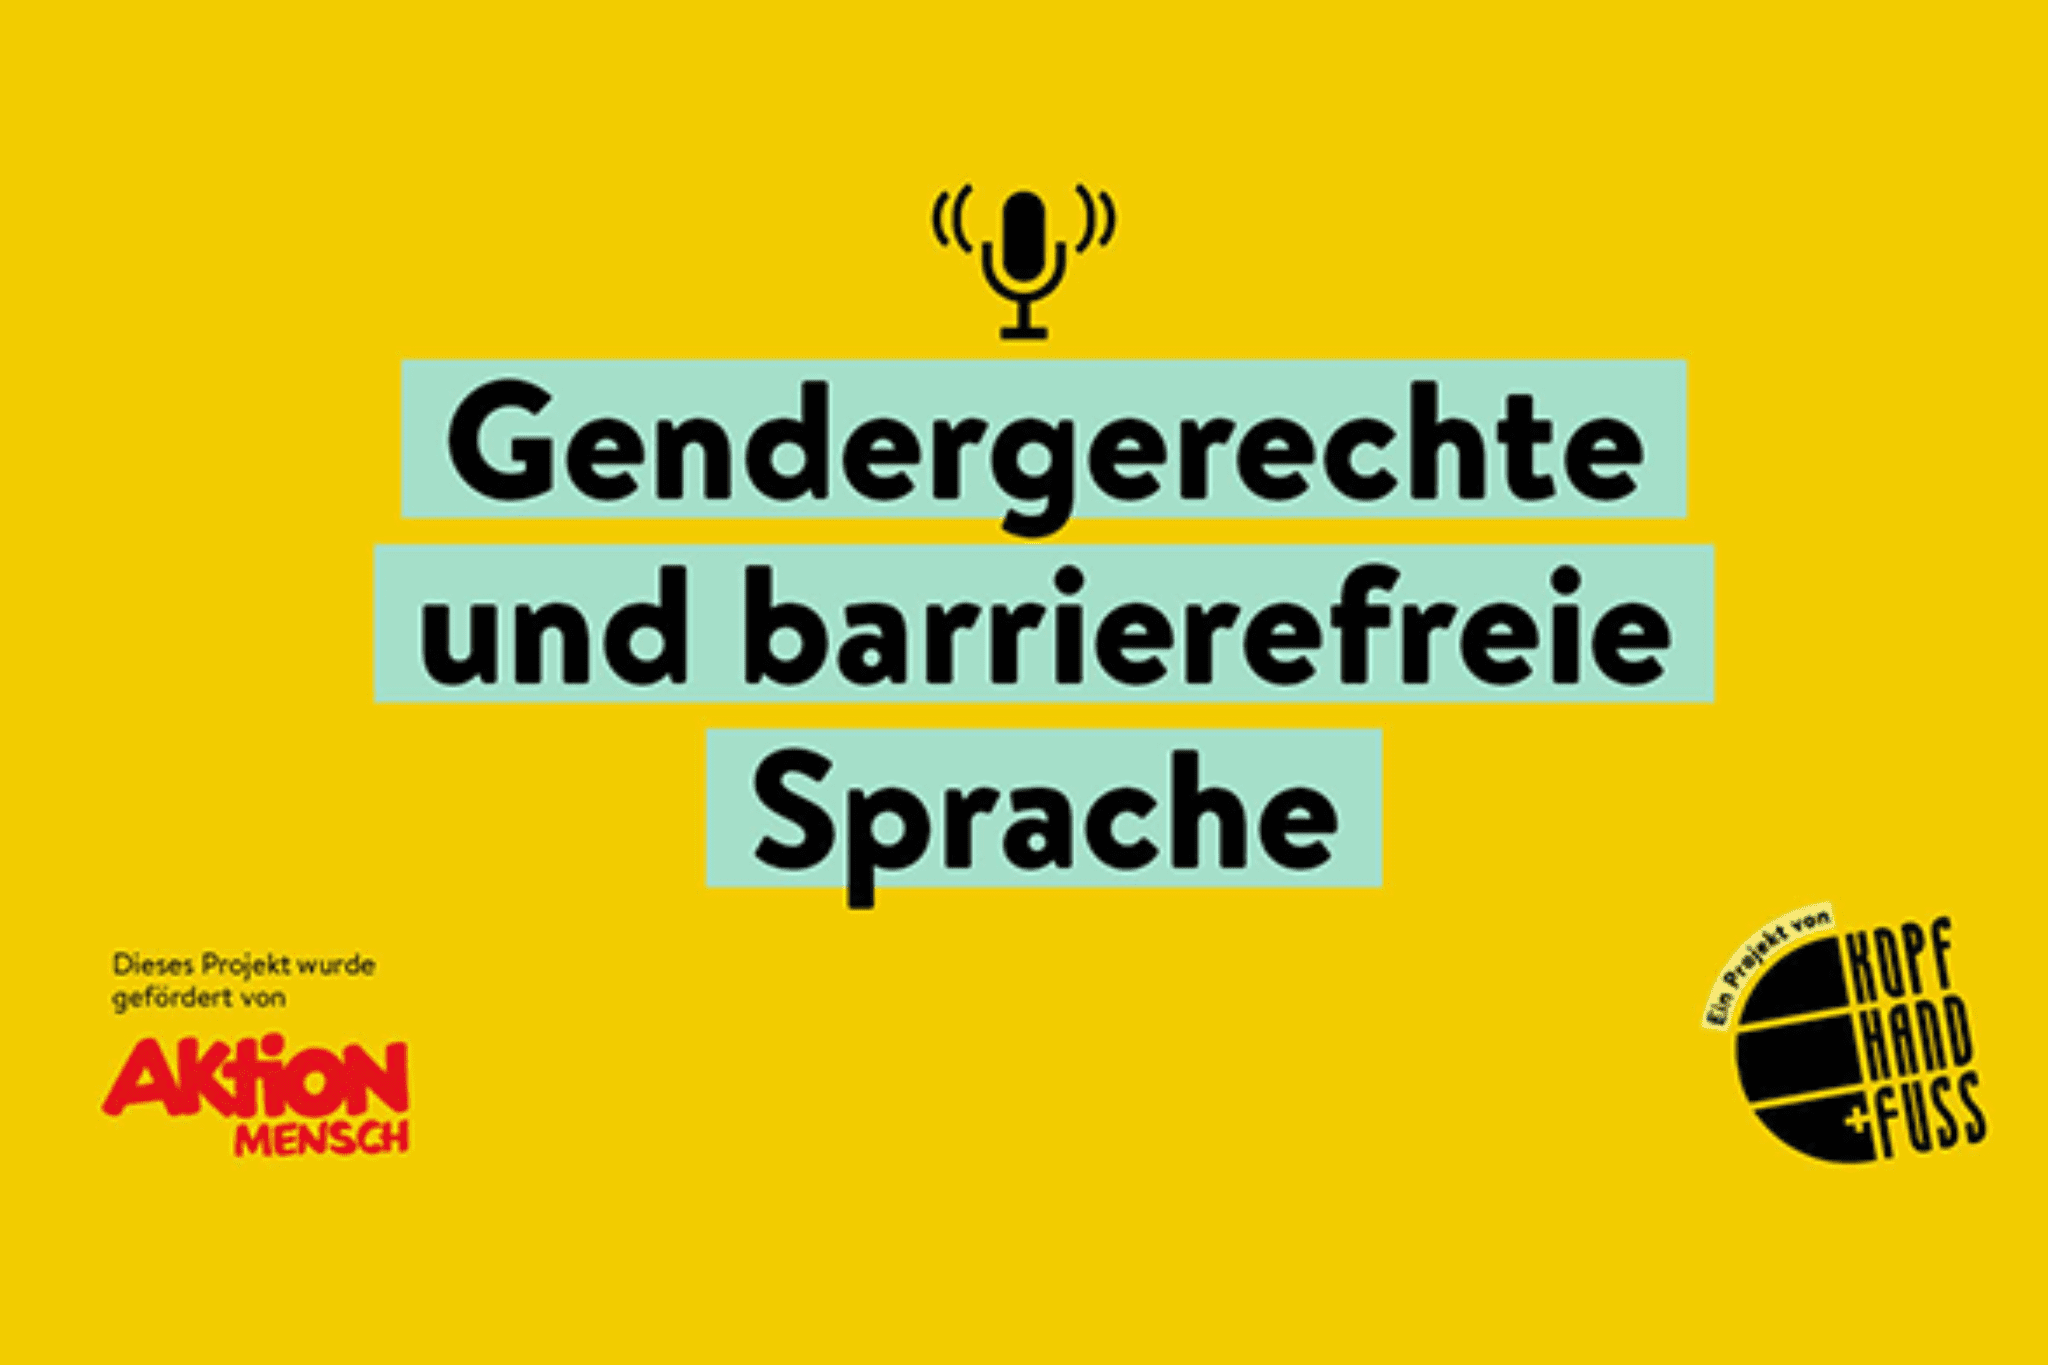 Gendergerechte und barrierefreie Sprache